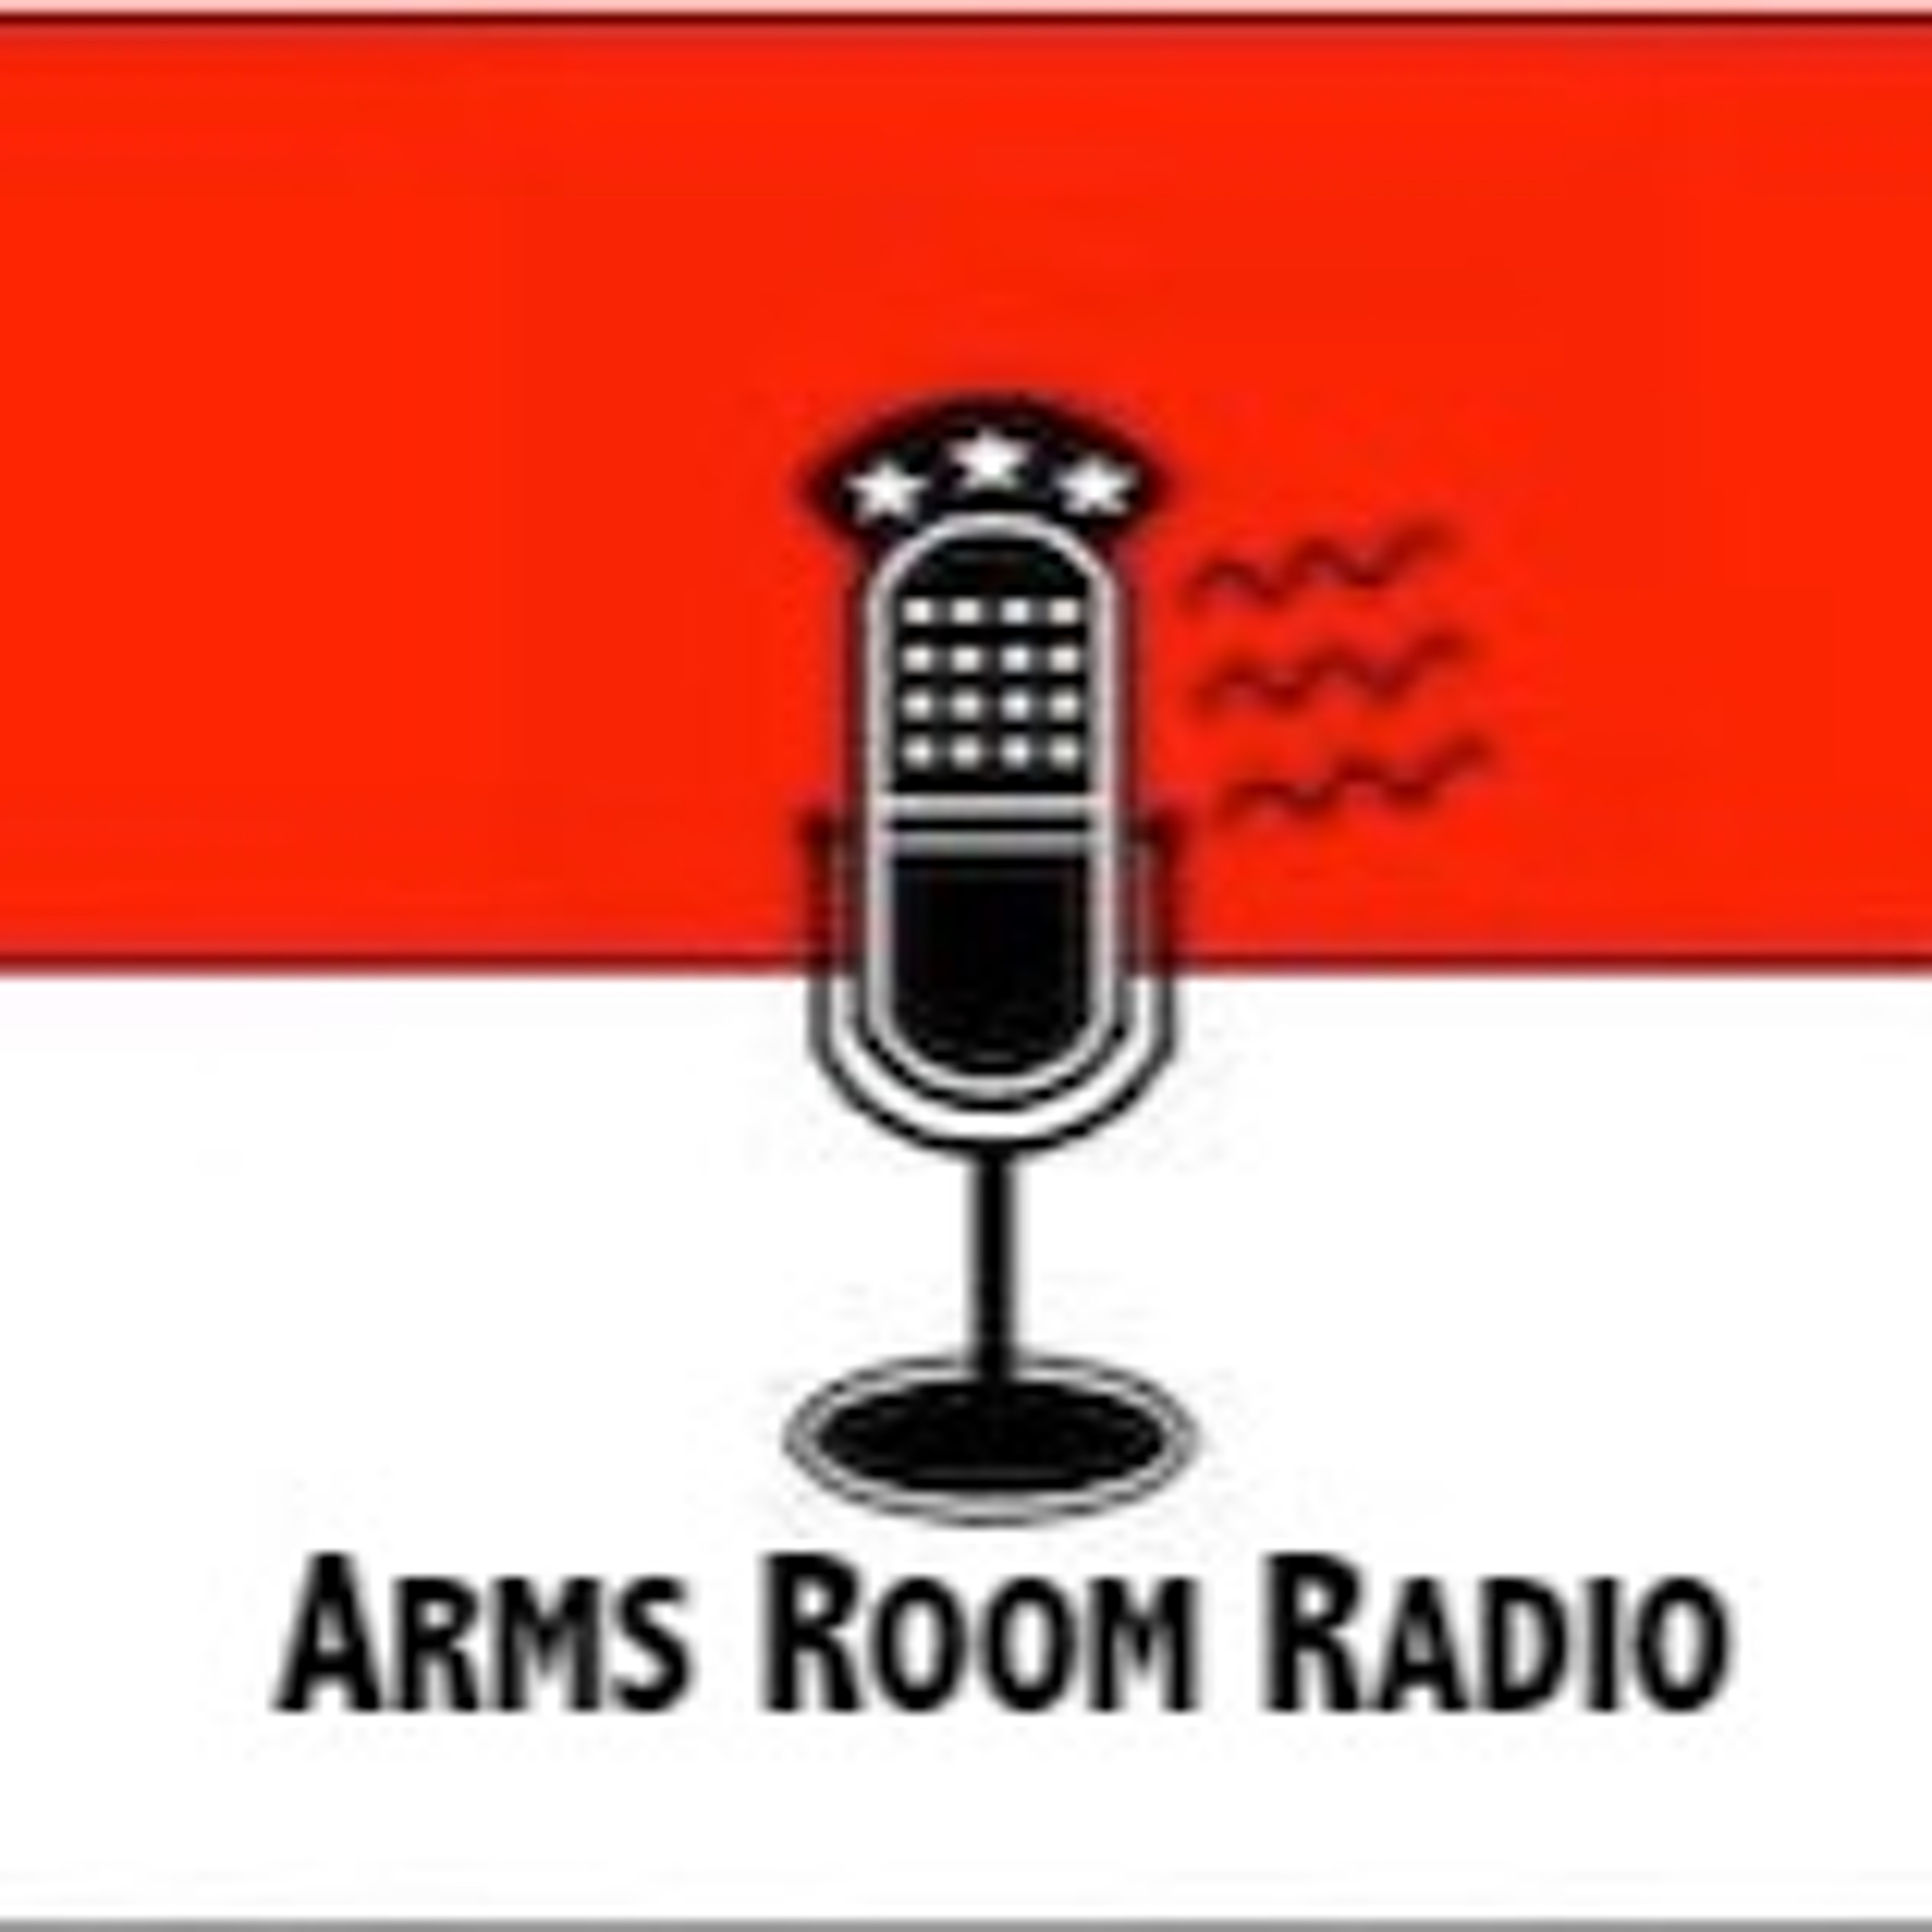 ArmsRoomRadio 10.12.19 Craig DeLuz and Dick’s